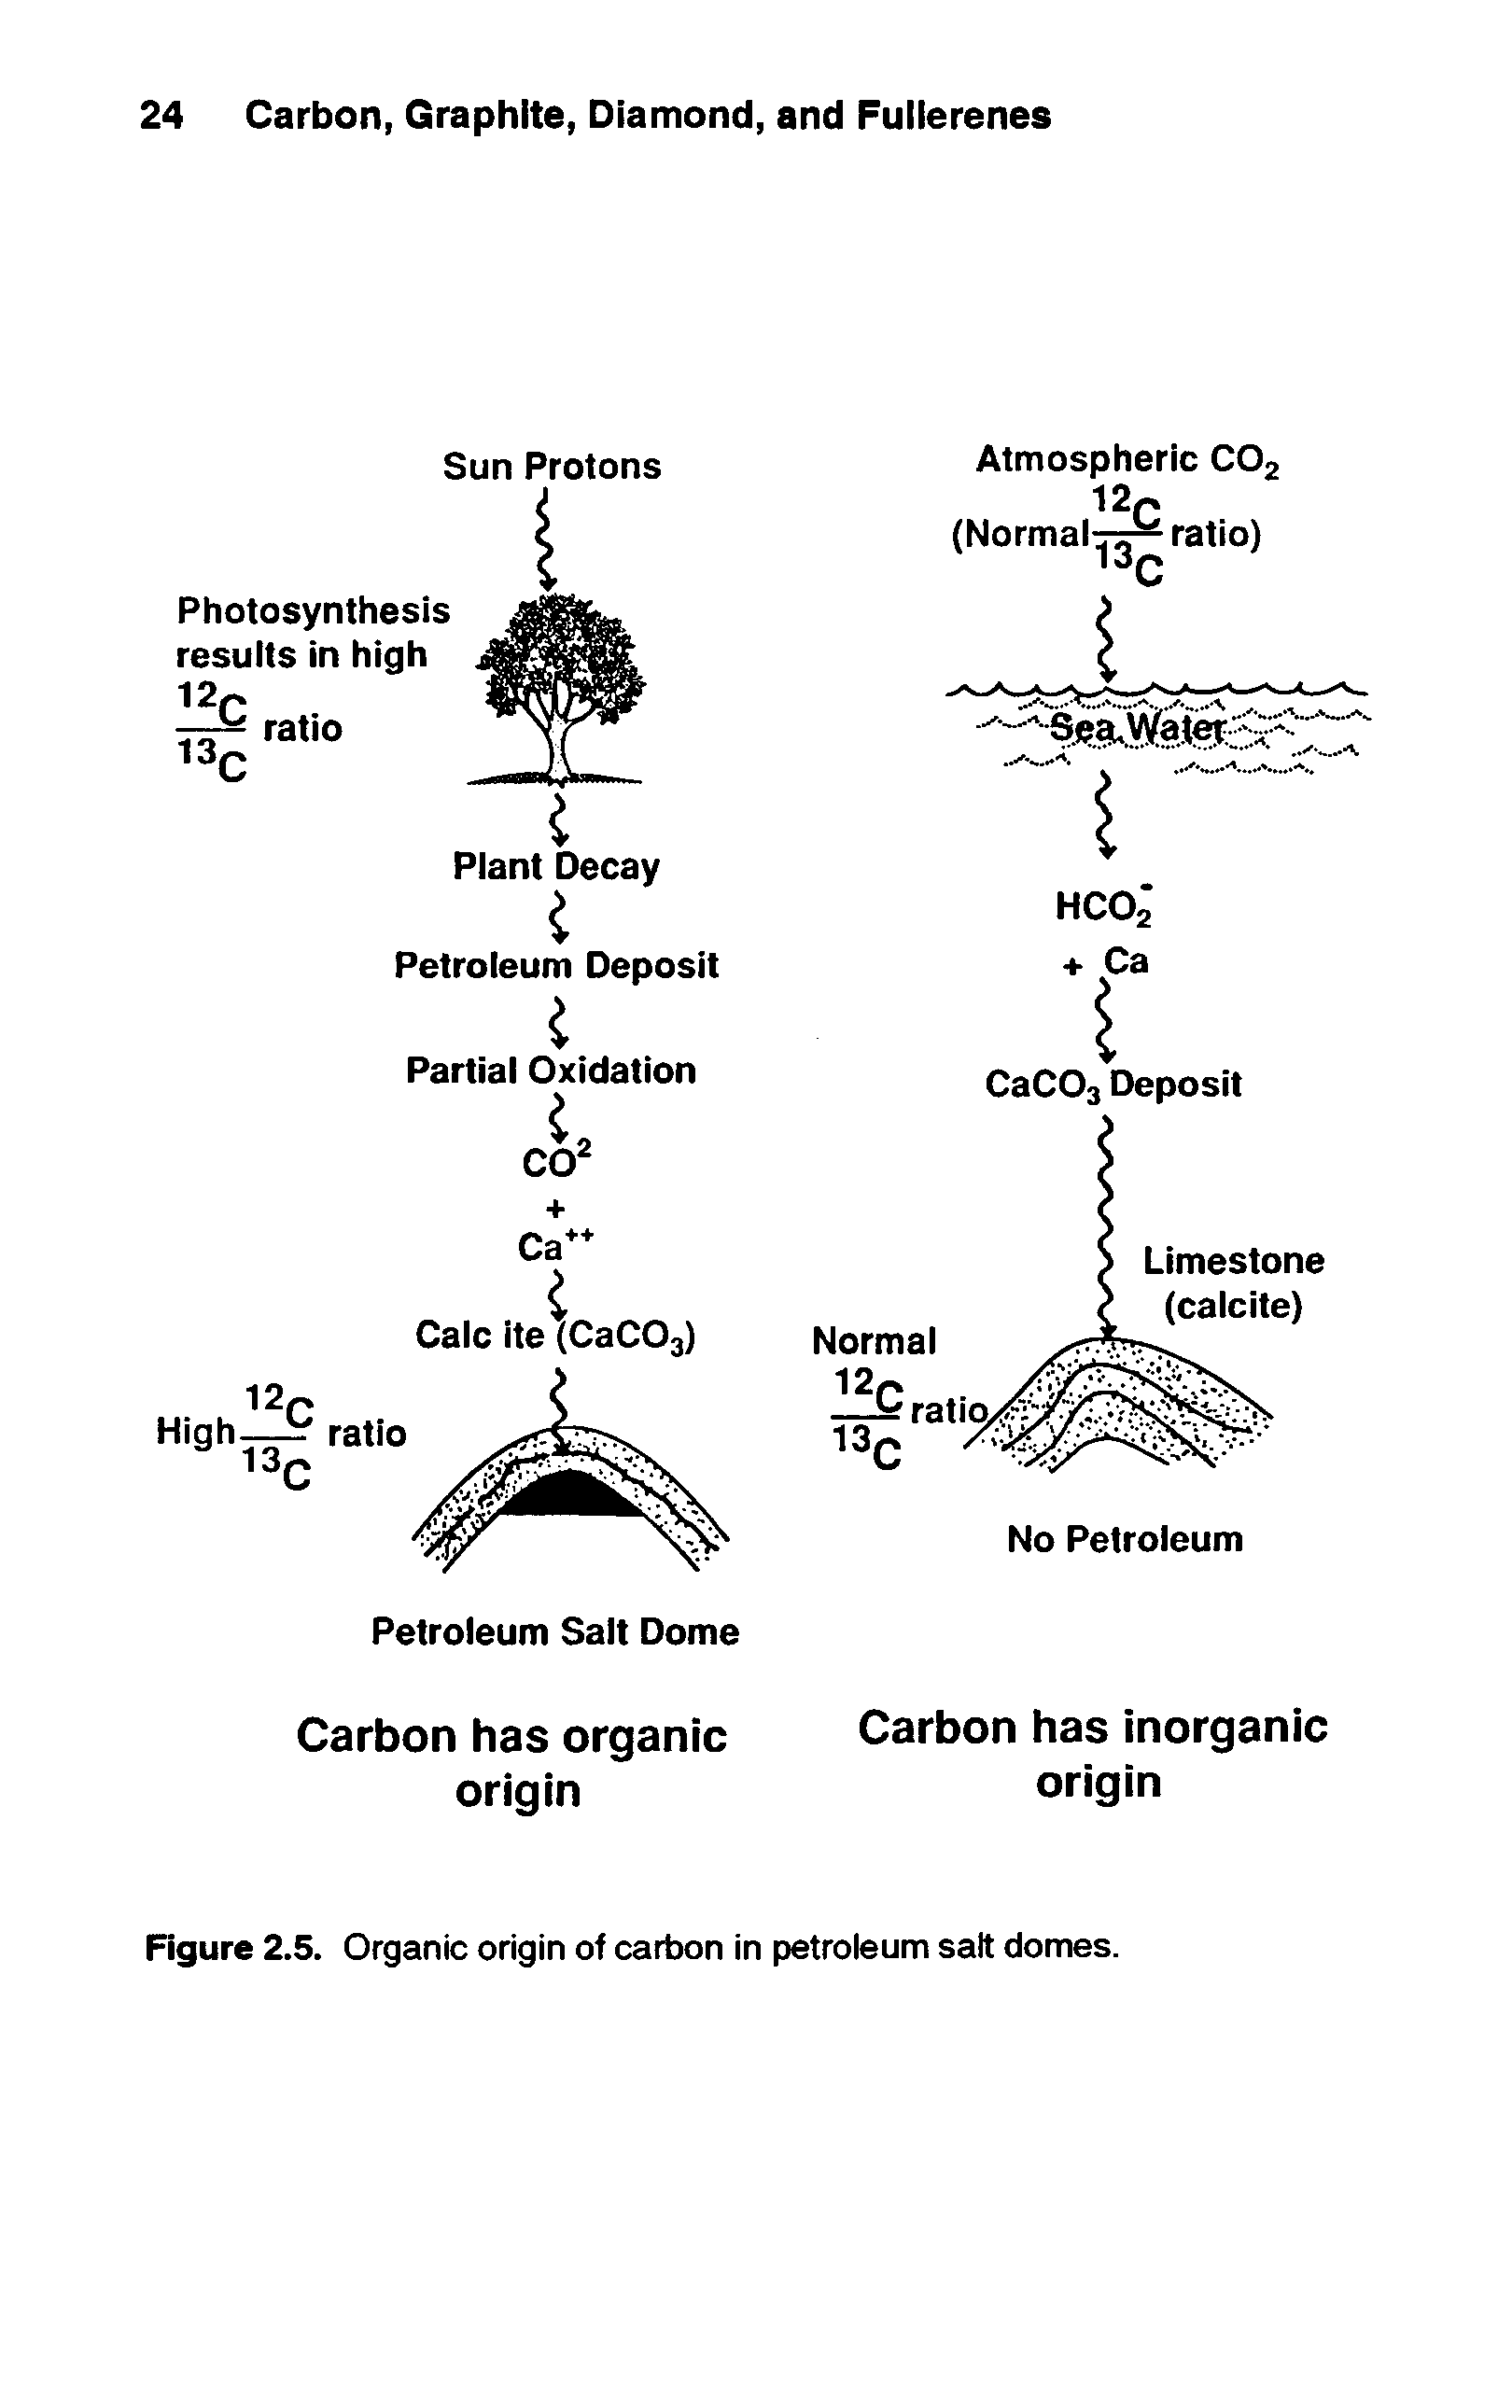 Figure 2.5. Organic origin of carbon in petroleum salt domes.